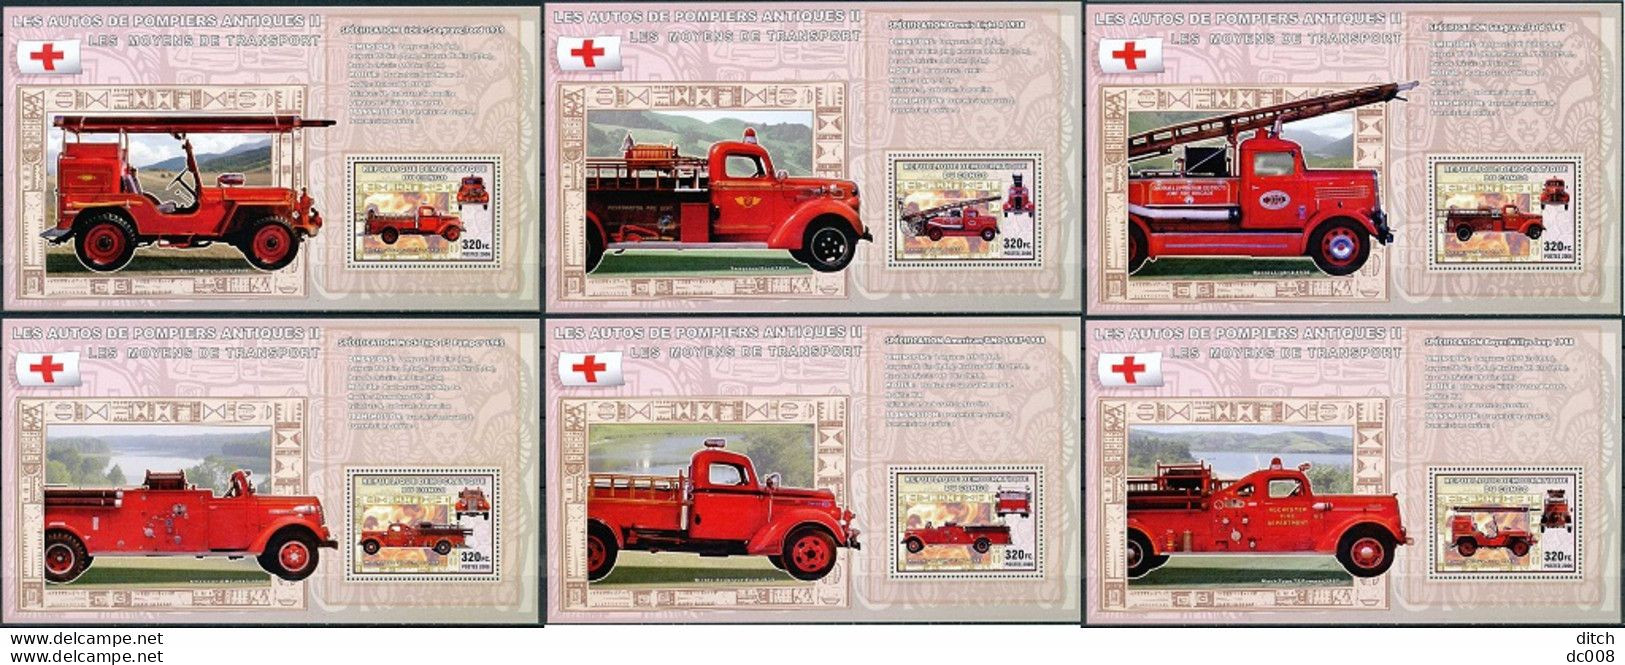 2006 Les Autos De Pompiers Antiques II - Complet-volledig 7 Blocs - Mint/hinged